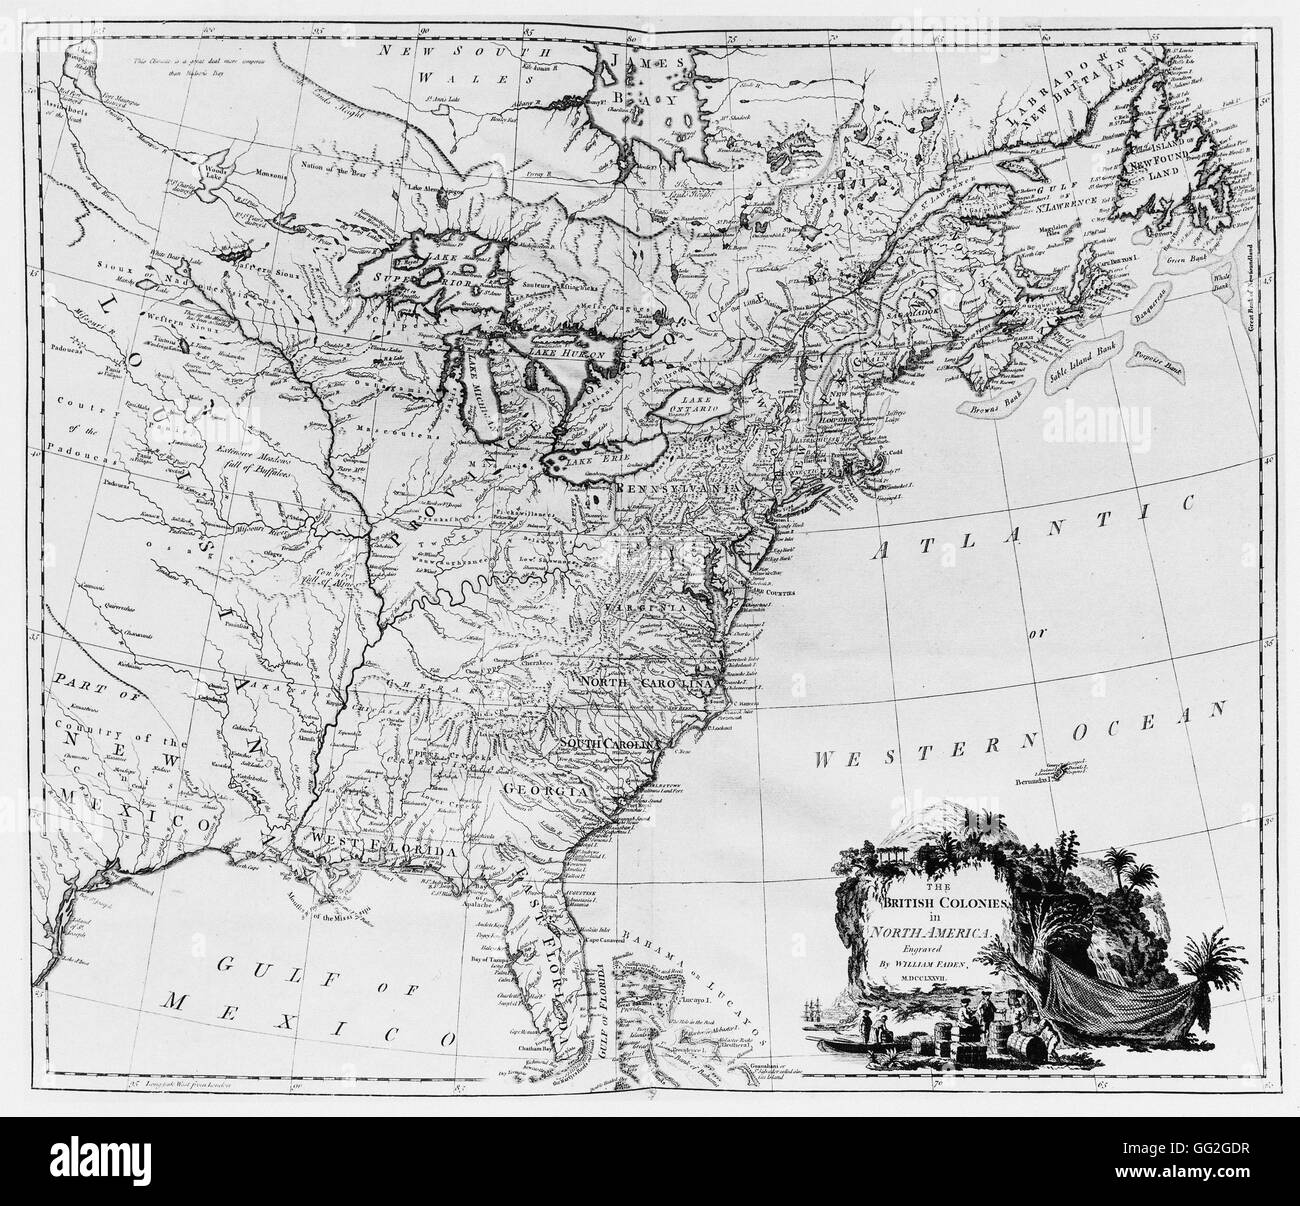 La carte des colonies britanniques en Amérique du Nord. Gravure par William Faden. 1777 Paris, Bibliothèque Nationale de France Banque D'Images